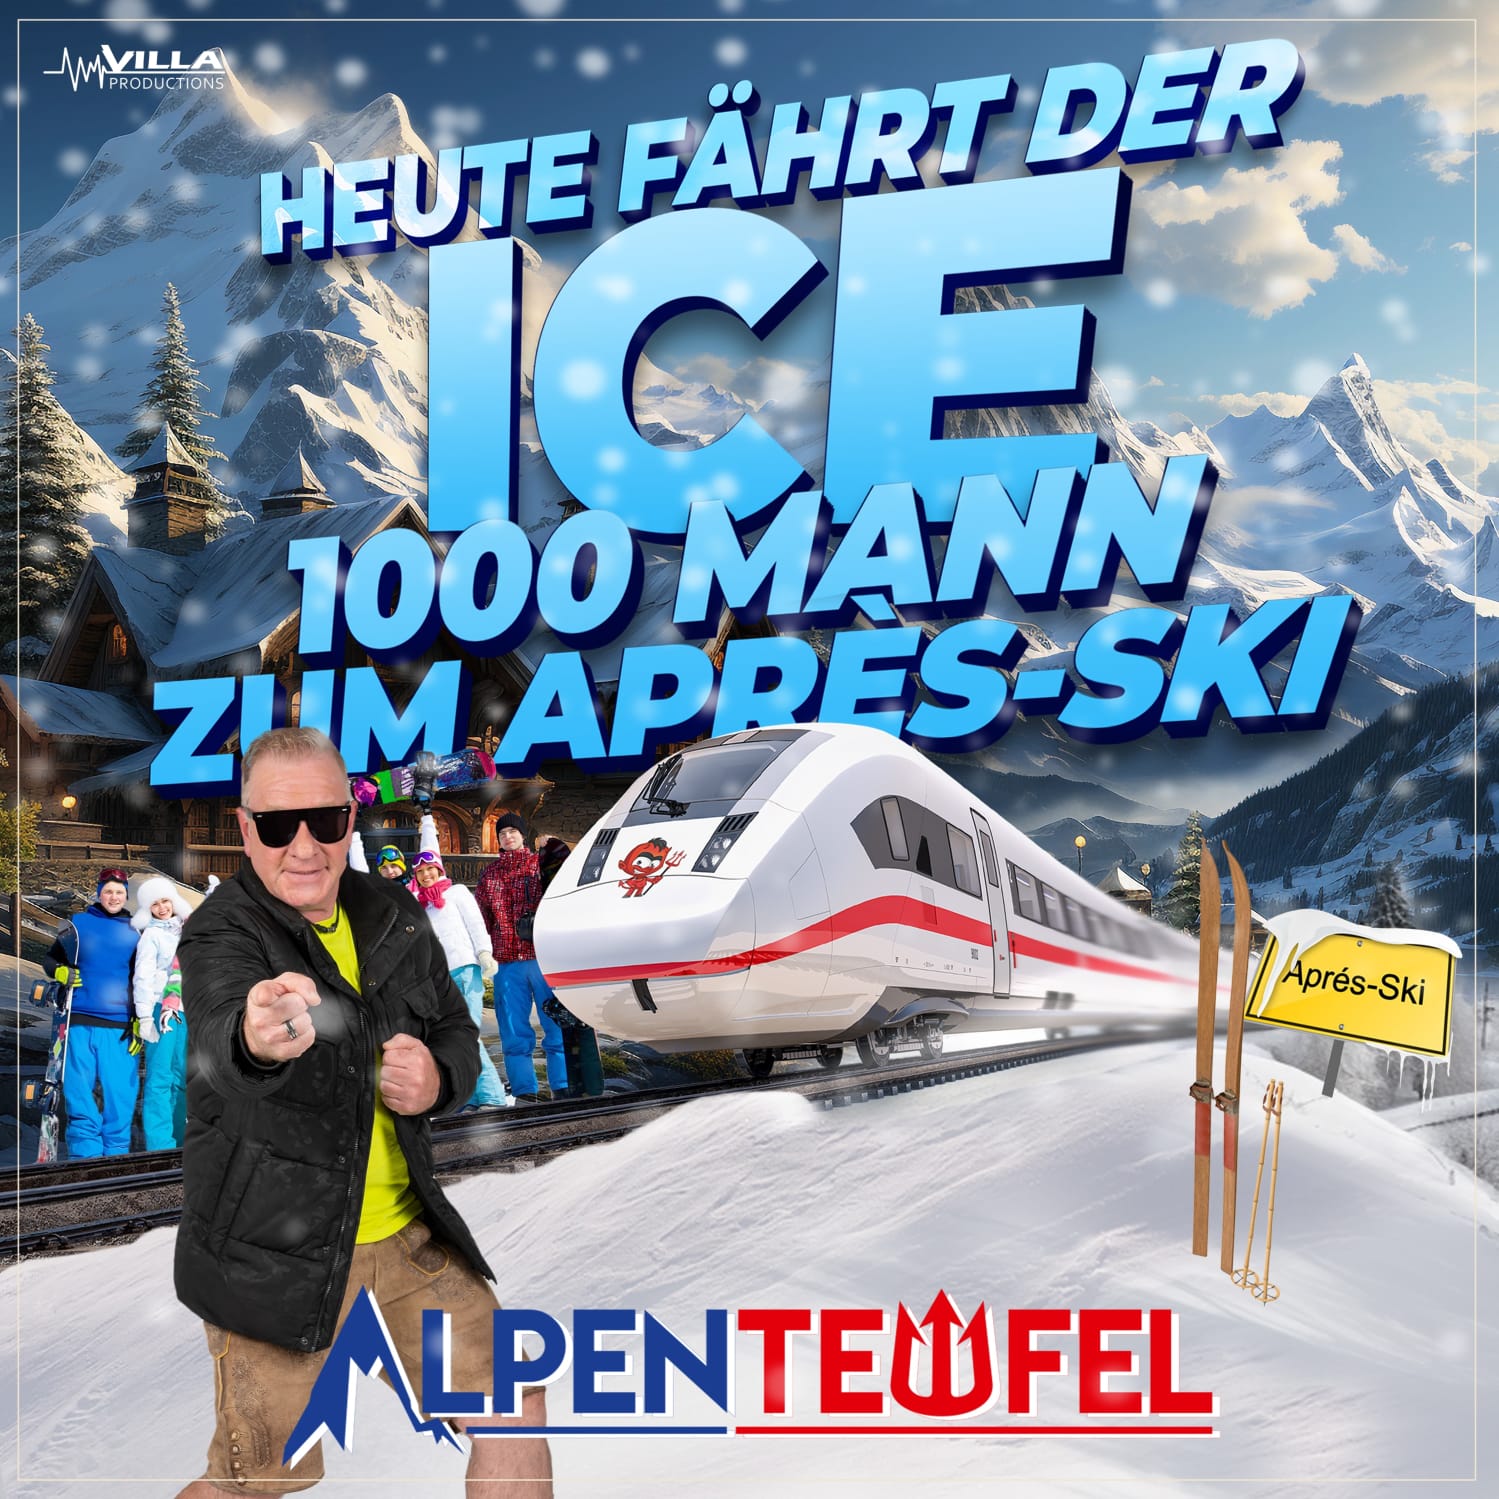 Bestes Apres-Ski-Feeling: Alpenteufel mit „Heute fährt der ICE mit 1000 Mann zum Apres-Ski“